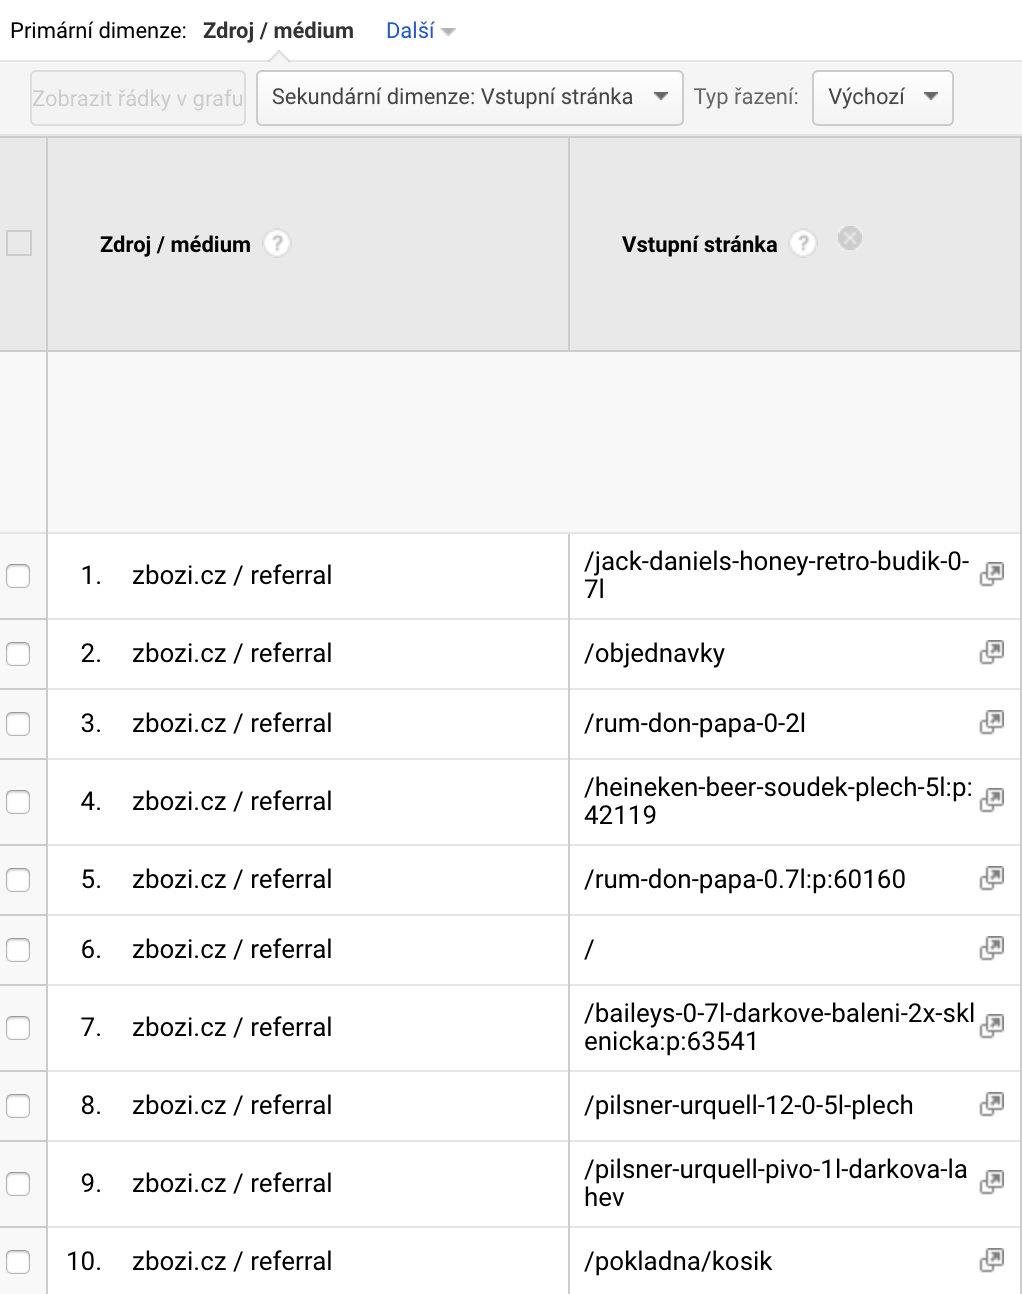 Zbozi.cz vstupní stránky v Google Analytics